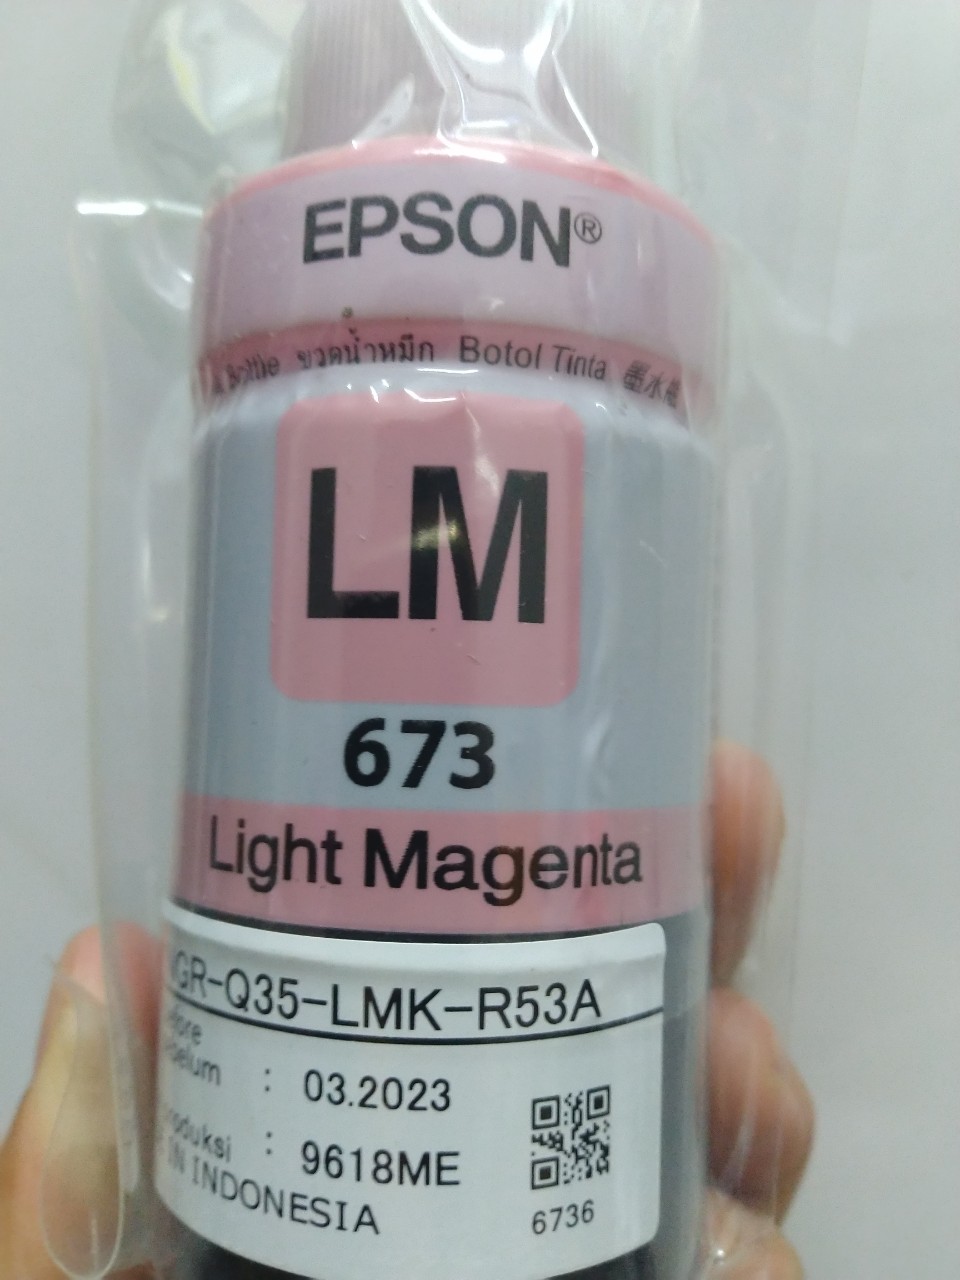 Mực Epson 673 màu đỏ nhạt dành cho máy Epson L805 / L850 / L1800 / L810 / L800- LM